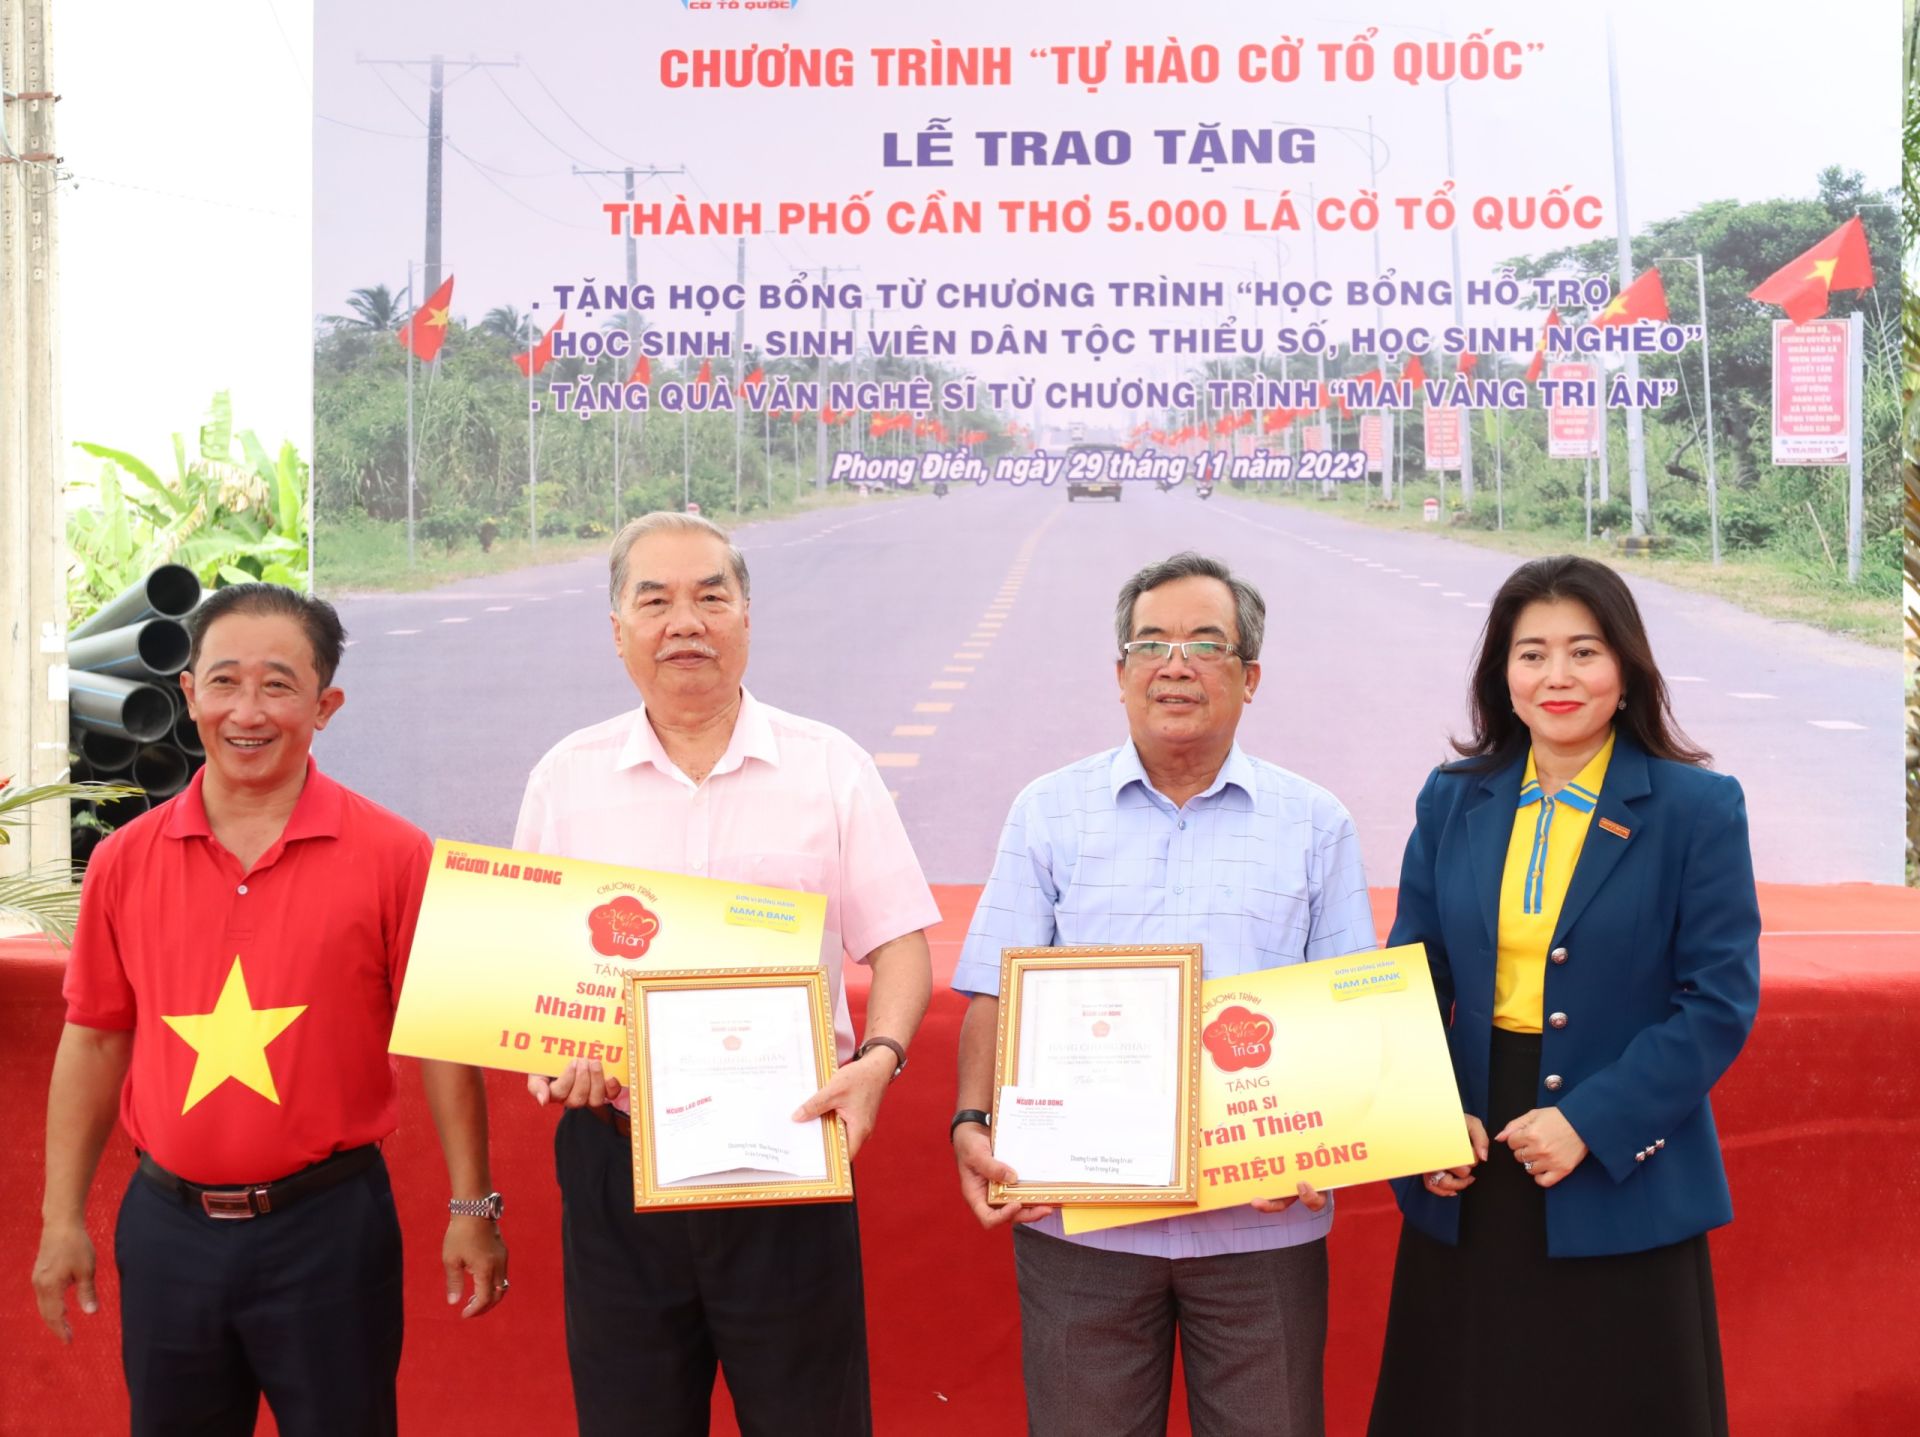 Ông Bùi Thanh Liêm - Phó Tổng Biên tập Báo Người Lao Động và bà Lê Thủy Tiên - Phó Giám đốc khu vực miền Tây của Ngân hàng TMCP Nam Á trao tặng chương trình 